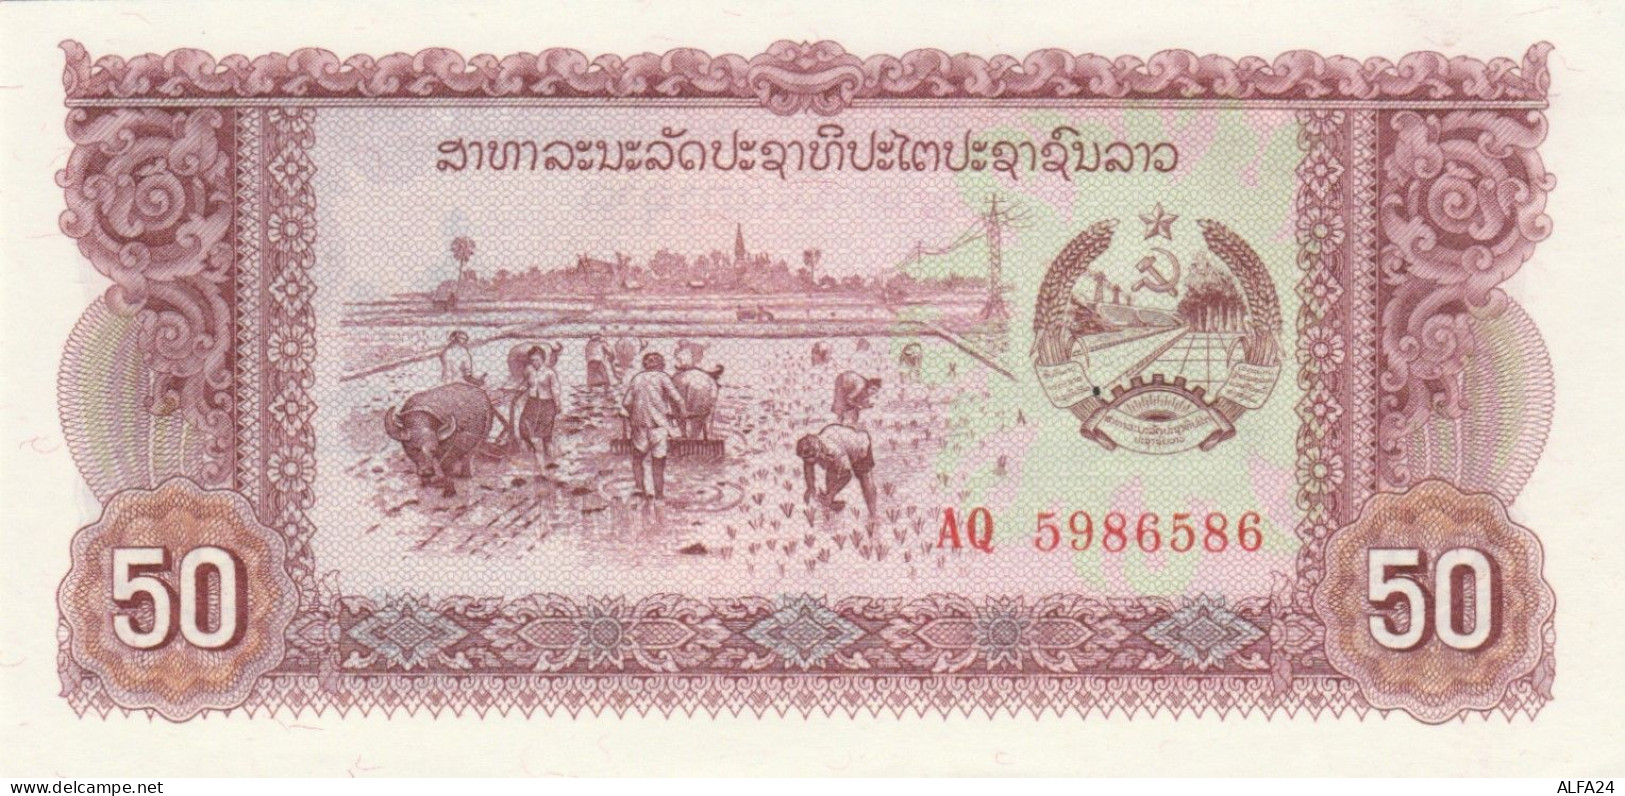 BANCONOTA LAOS 50 UNC (MK460 - Laos